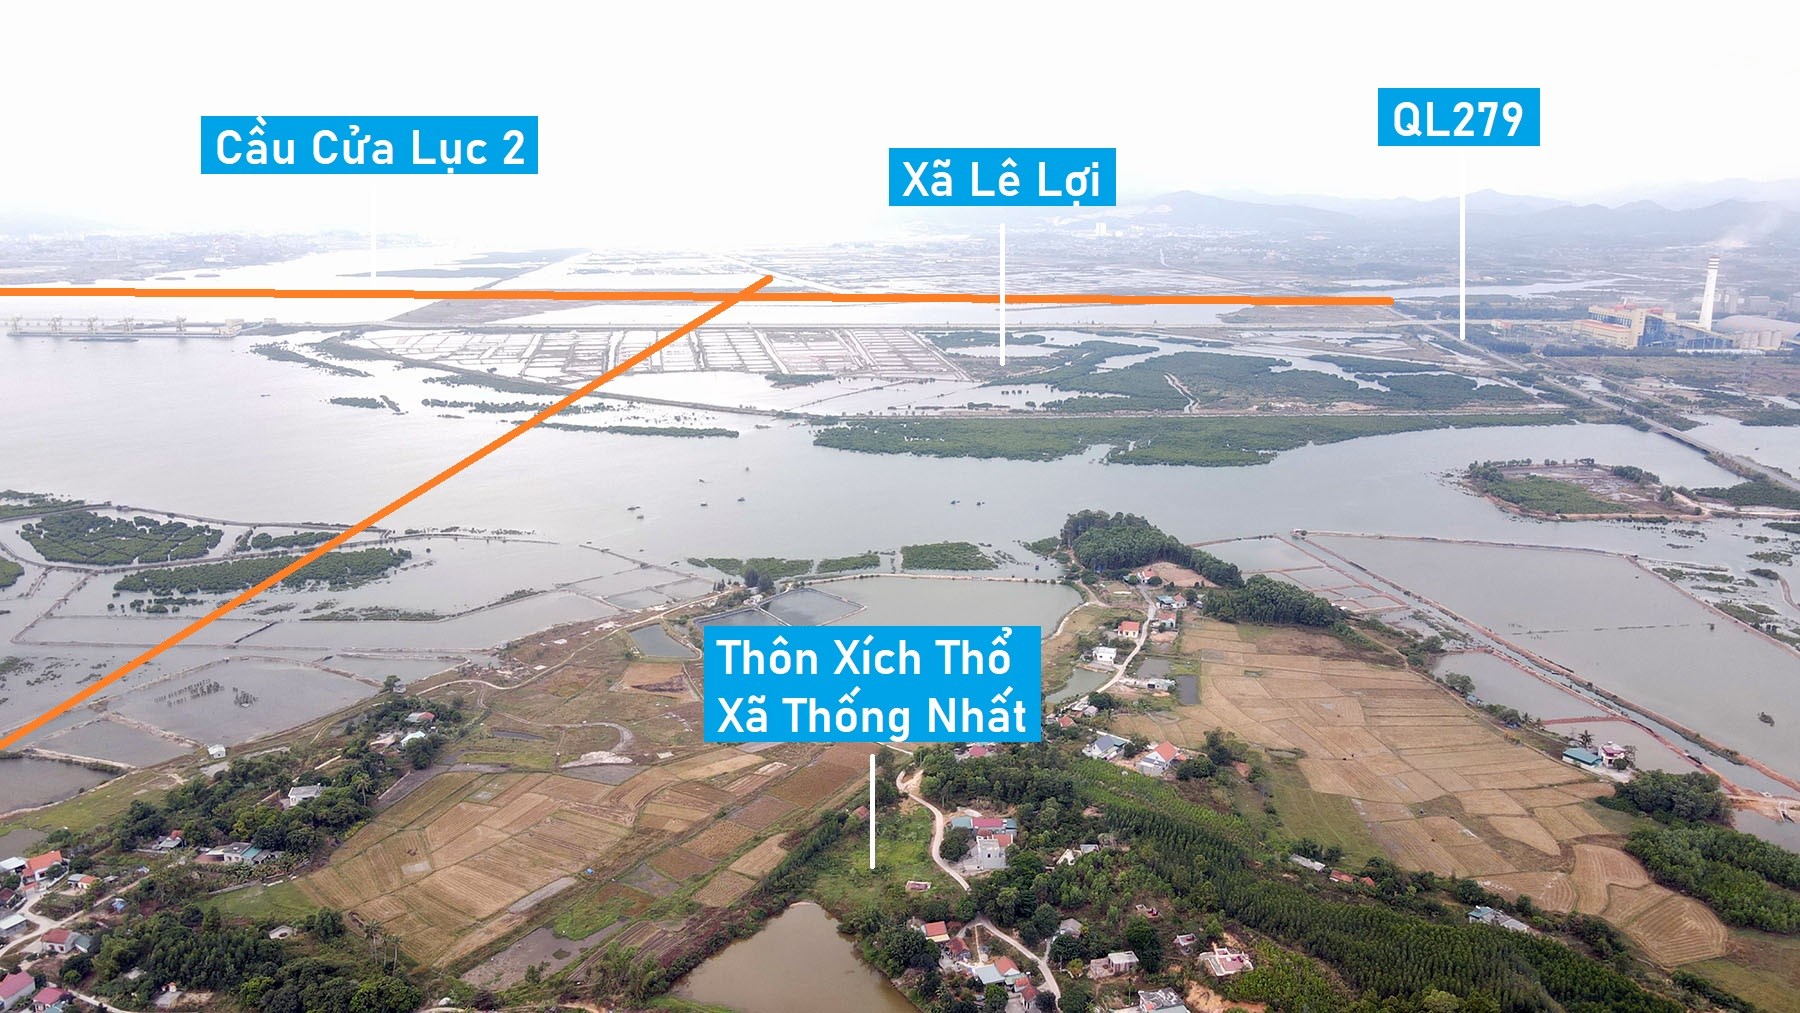 Vị trí tuyến đường gần 8 km sẽ mở kết nối cầu Cửa Lục 1 với cầu Cửa Lục 3 ở Quảng Ninh